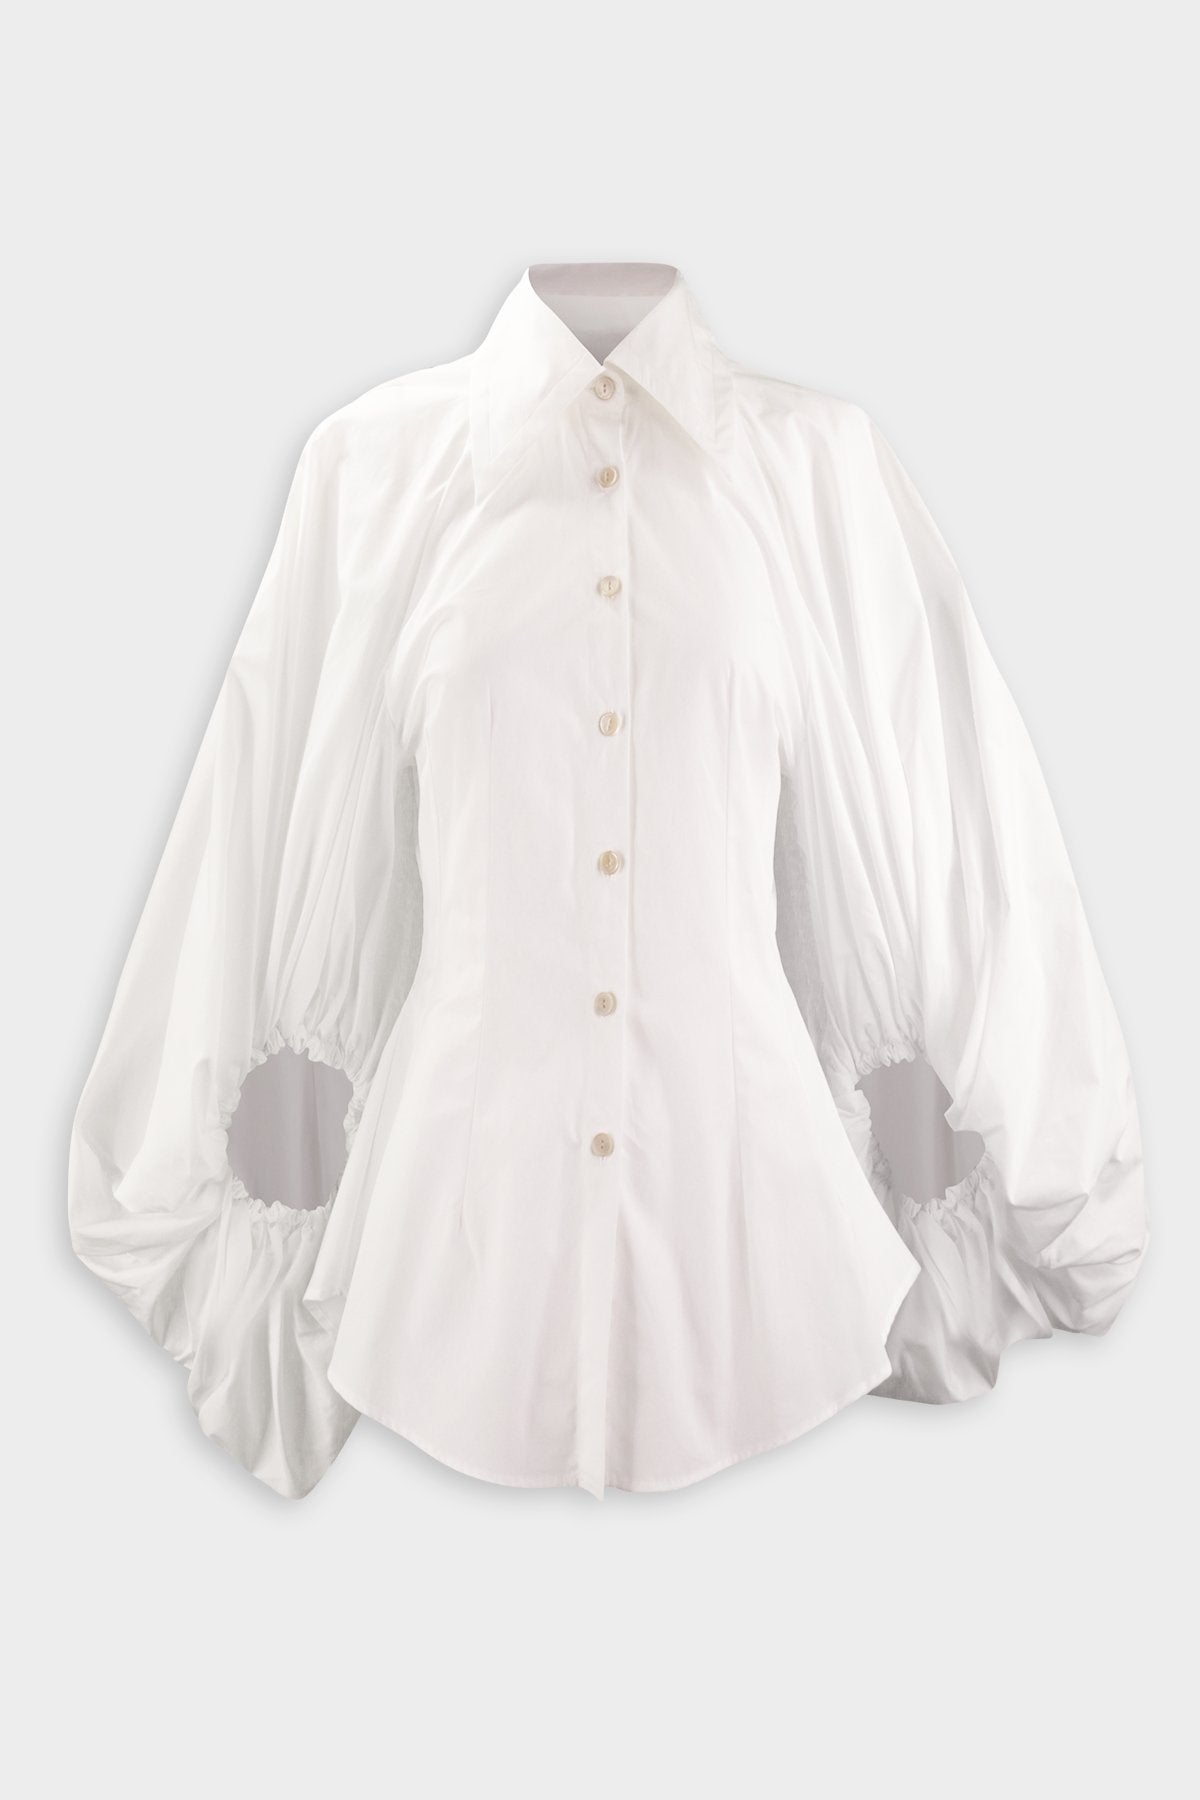 Healing Shirt in White - shop-olivia.com